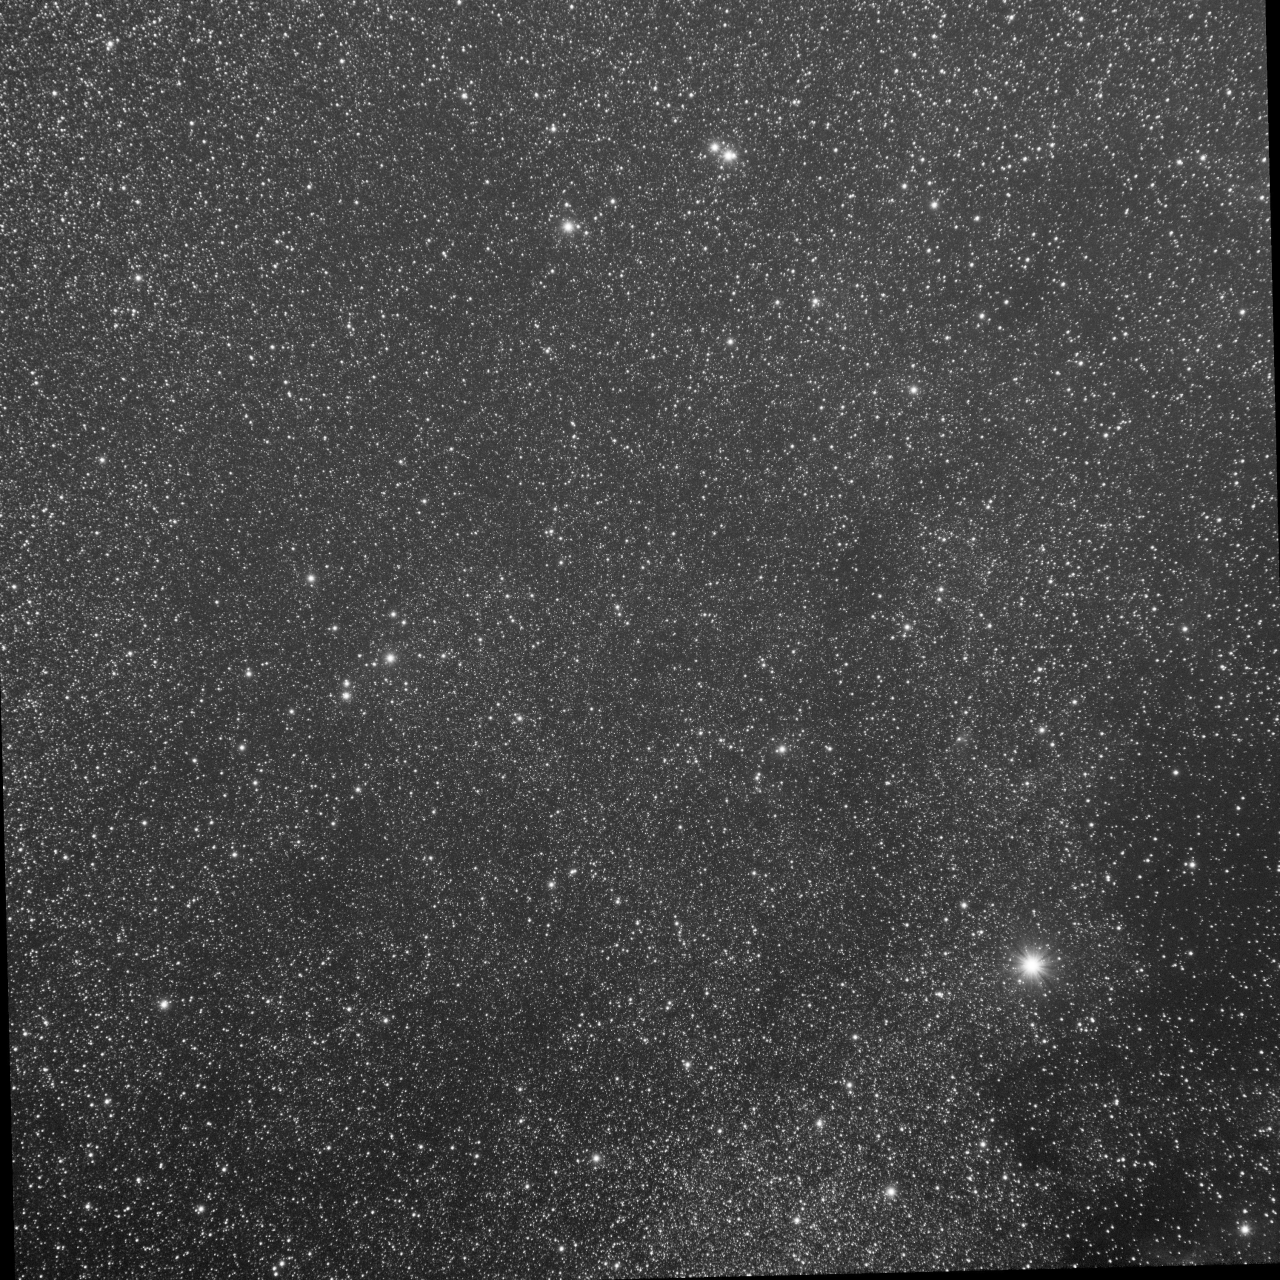 Cygnus near Sh2-115 - G